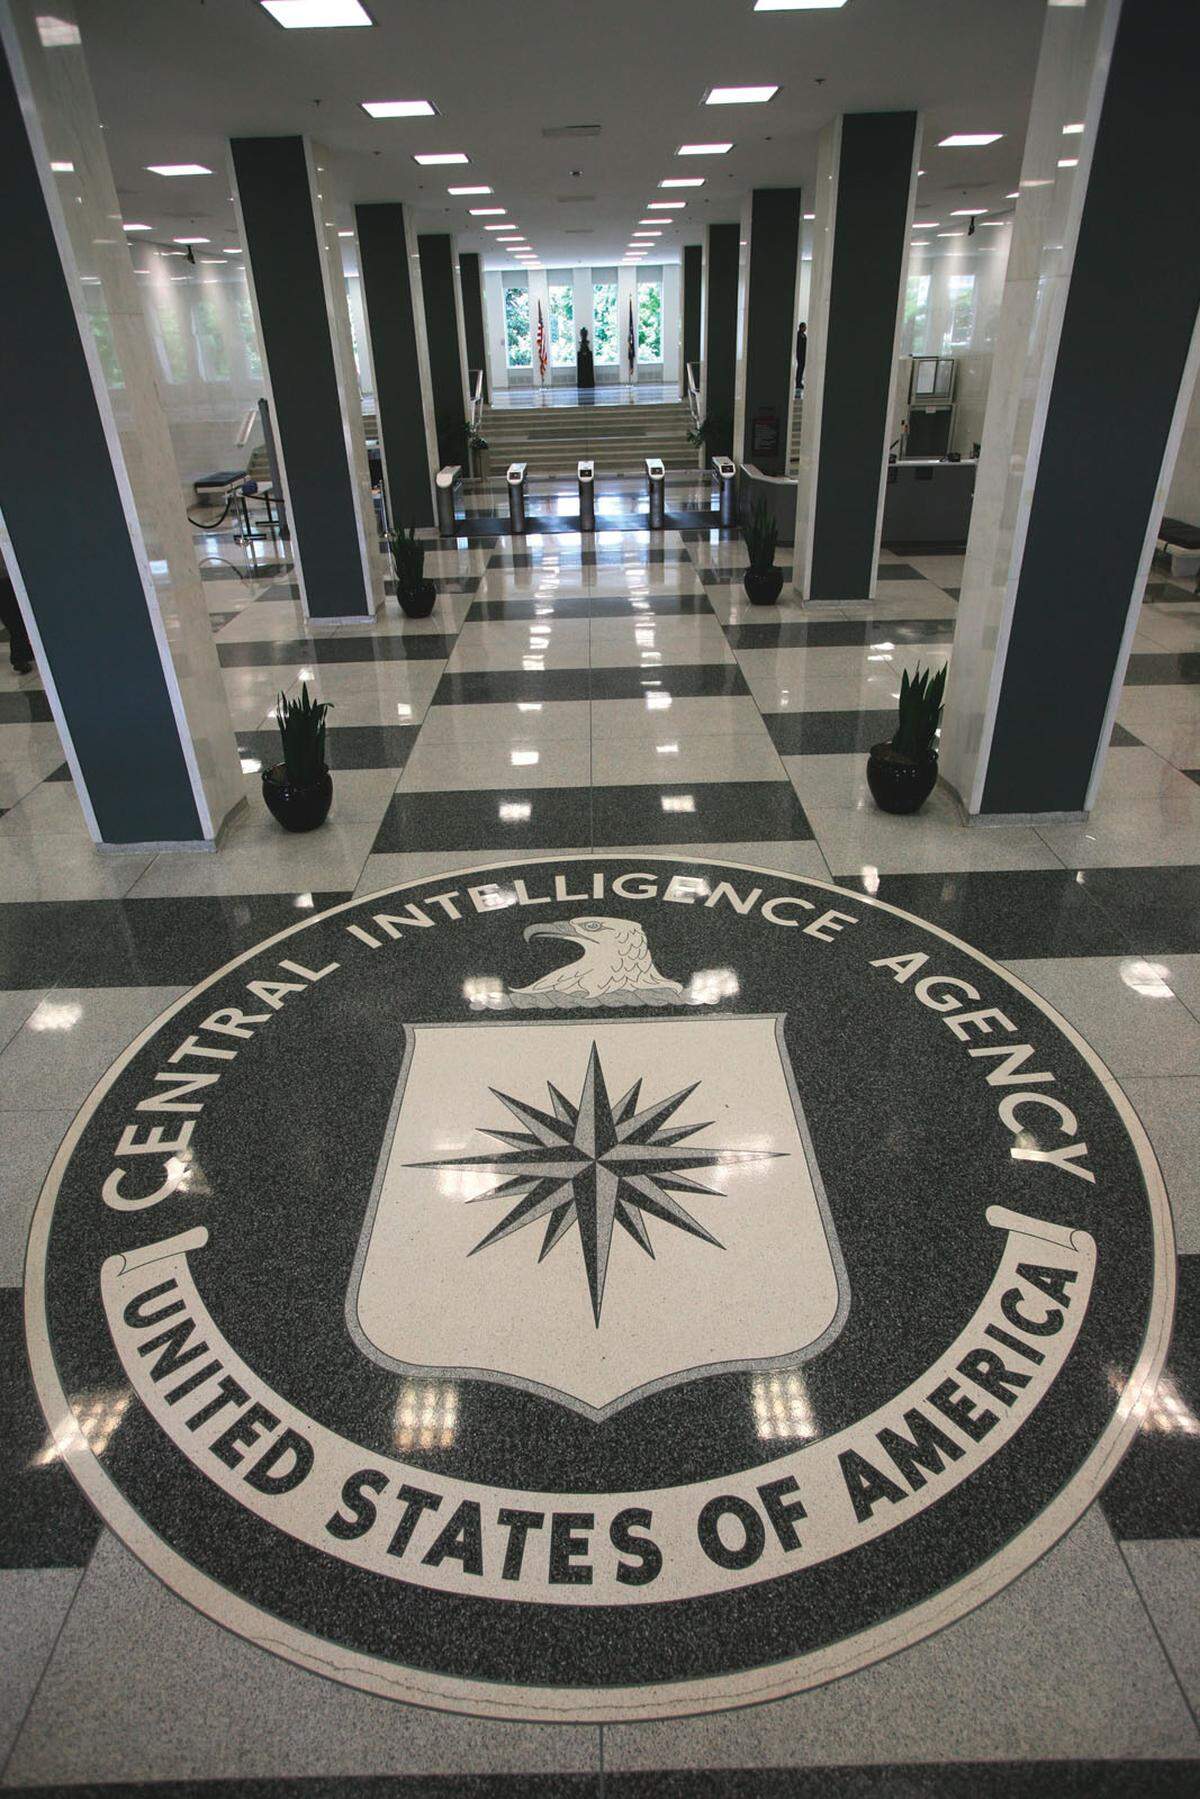 Die CIA ist der zentrale Nachrichtendienst der Vereinigten Staaten und versorgt die Entscheidungsträger in Washington mit Informationen zu Angelegenheiten der nationalen Sicherheit. Hier ist ihr Hauptquartier zu sehen - zumindest der Eingang dazu. Der Sitz der CIA, das George Bush Center for Intelligence in Langley, zählt zu den sichersten Gebäuden der Welt.